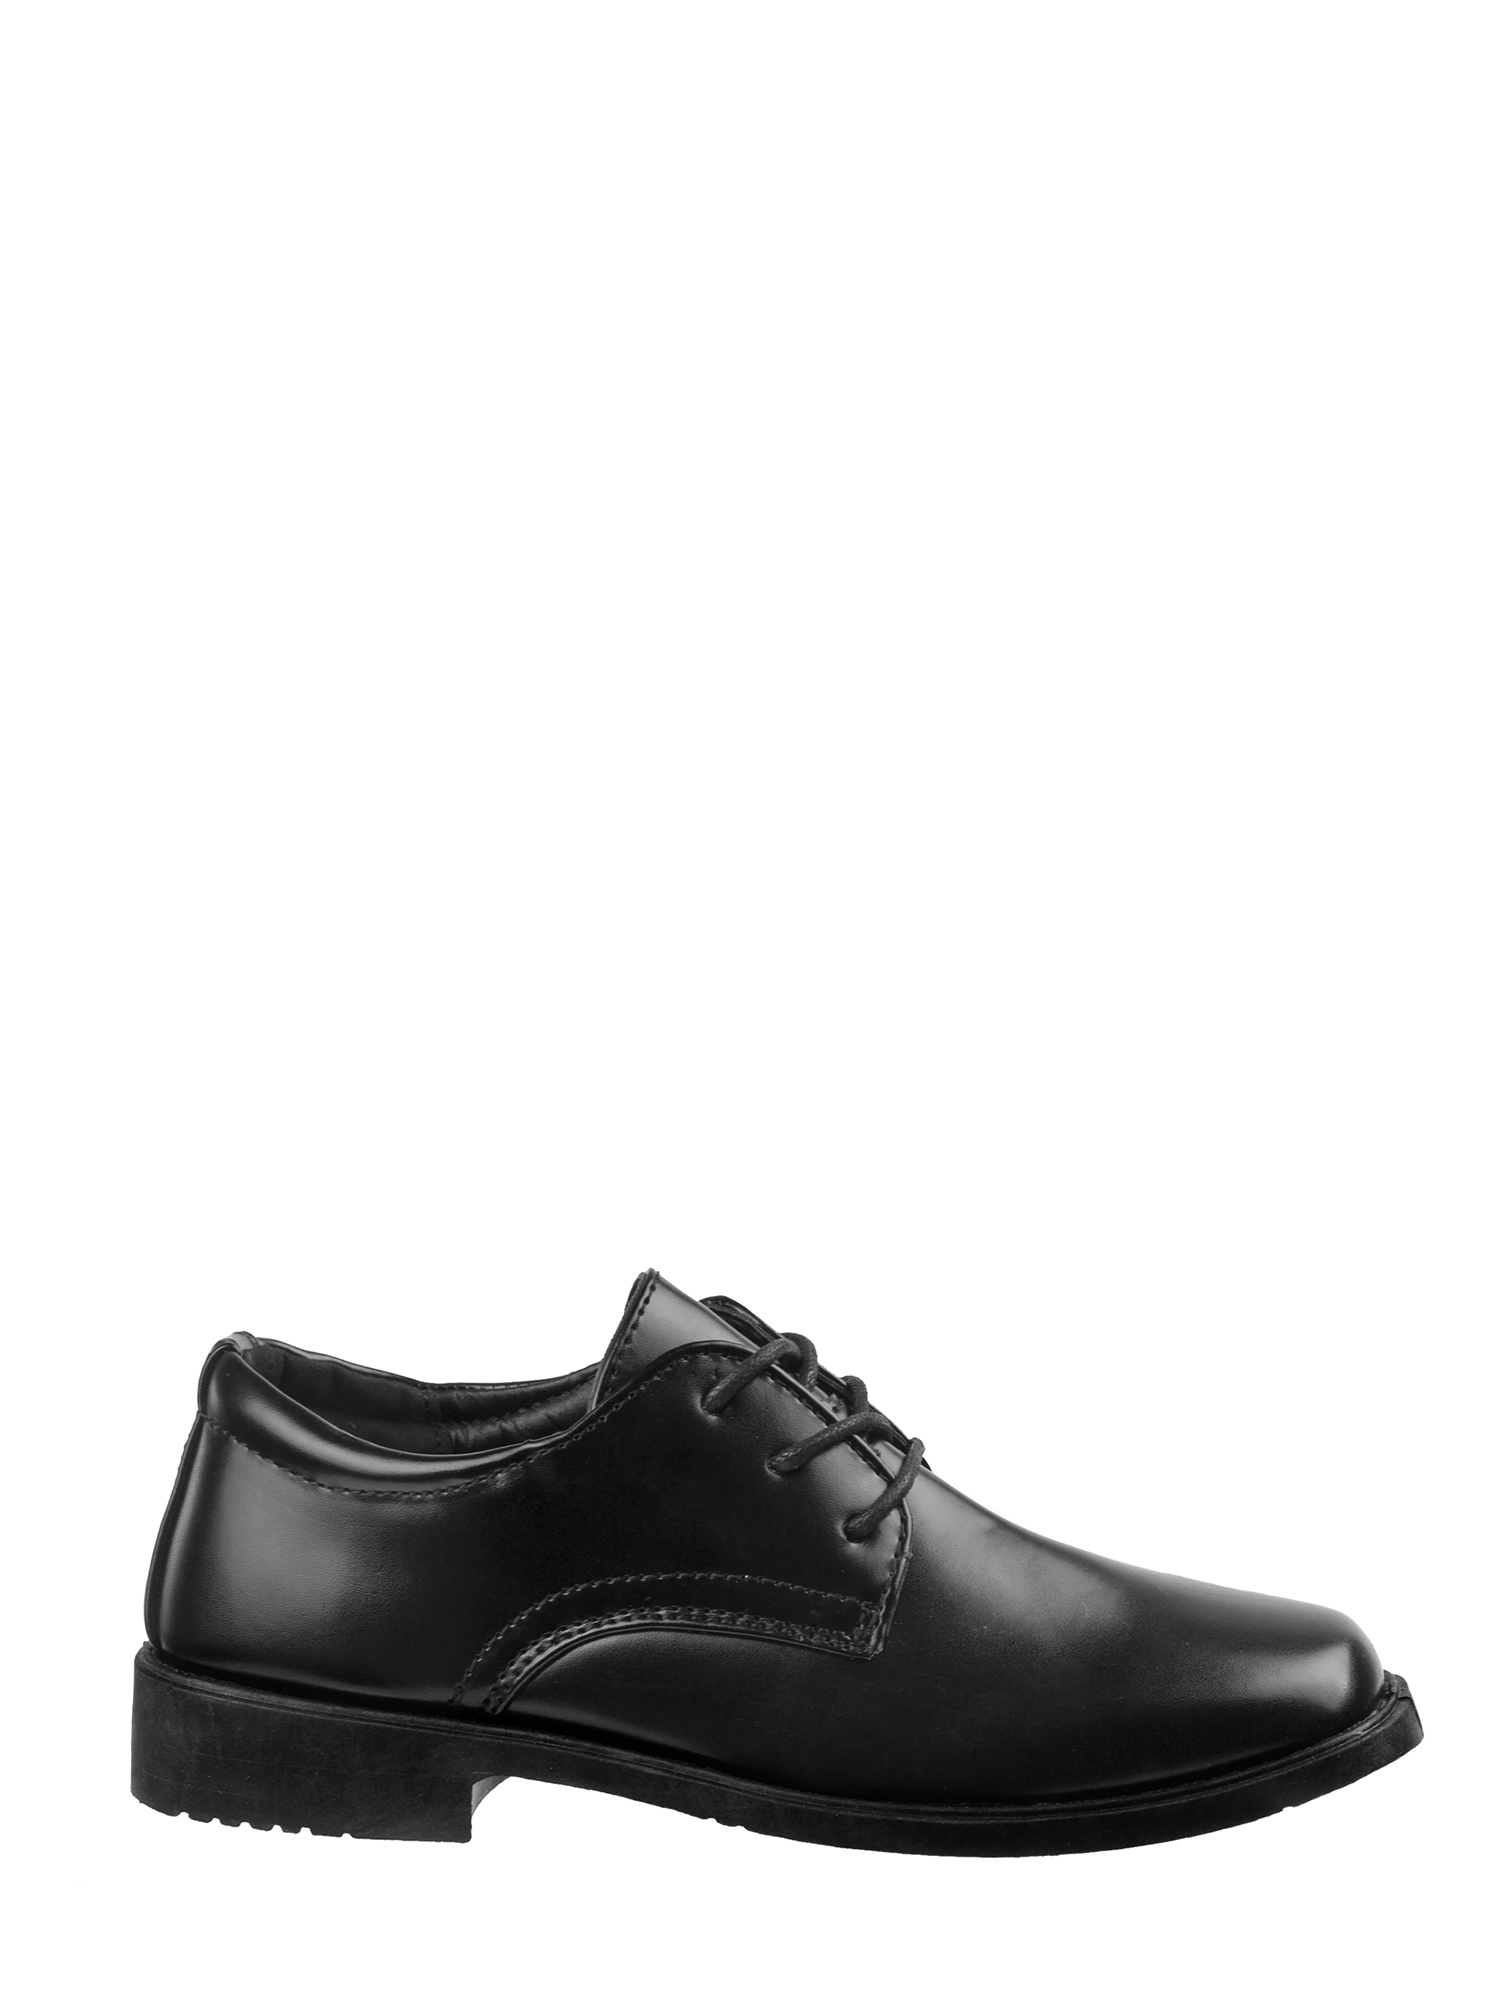 Joseph Allen Boys' Dress Shoes - image 5 of 7